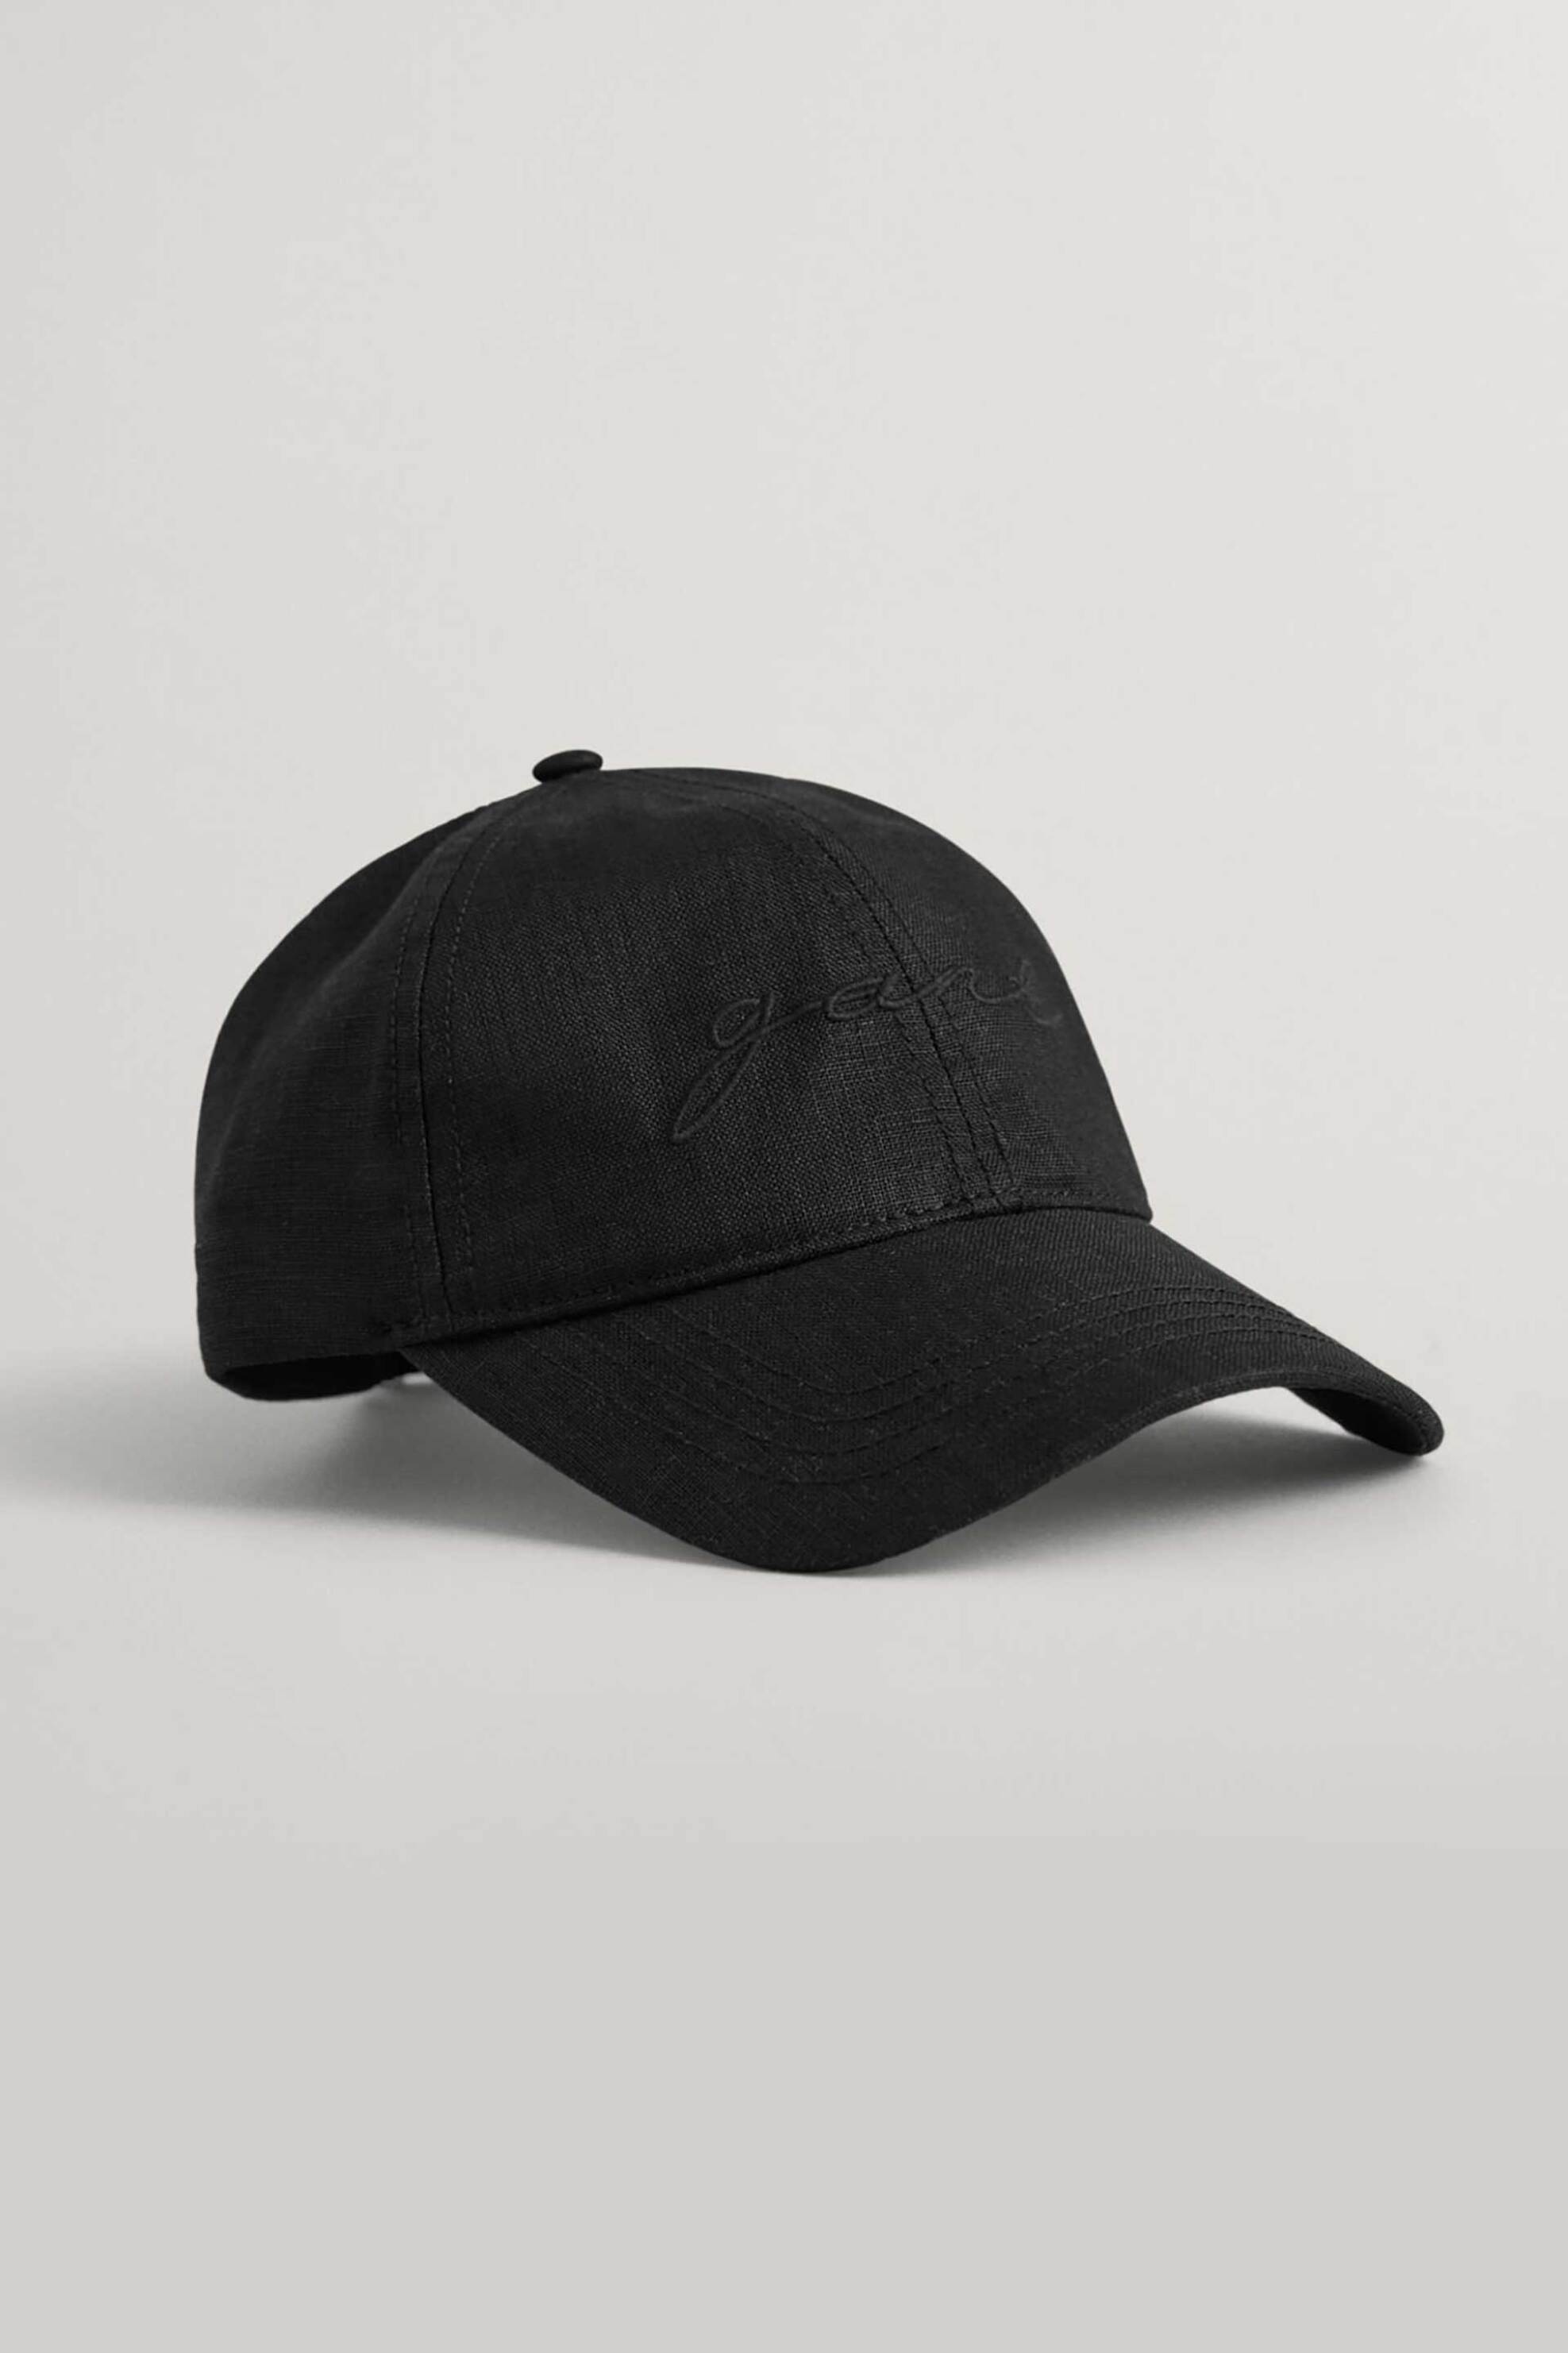 Γυναικεία Ρούχα & Αξεσουάρ > Γυναικεία Αξεσουάρ > Γυναικεία Καπέλα - Σκούφοι Gant γυναικείο λινό καπέλο με κεντημένο λογότυπο - 4900079 Μαύρο